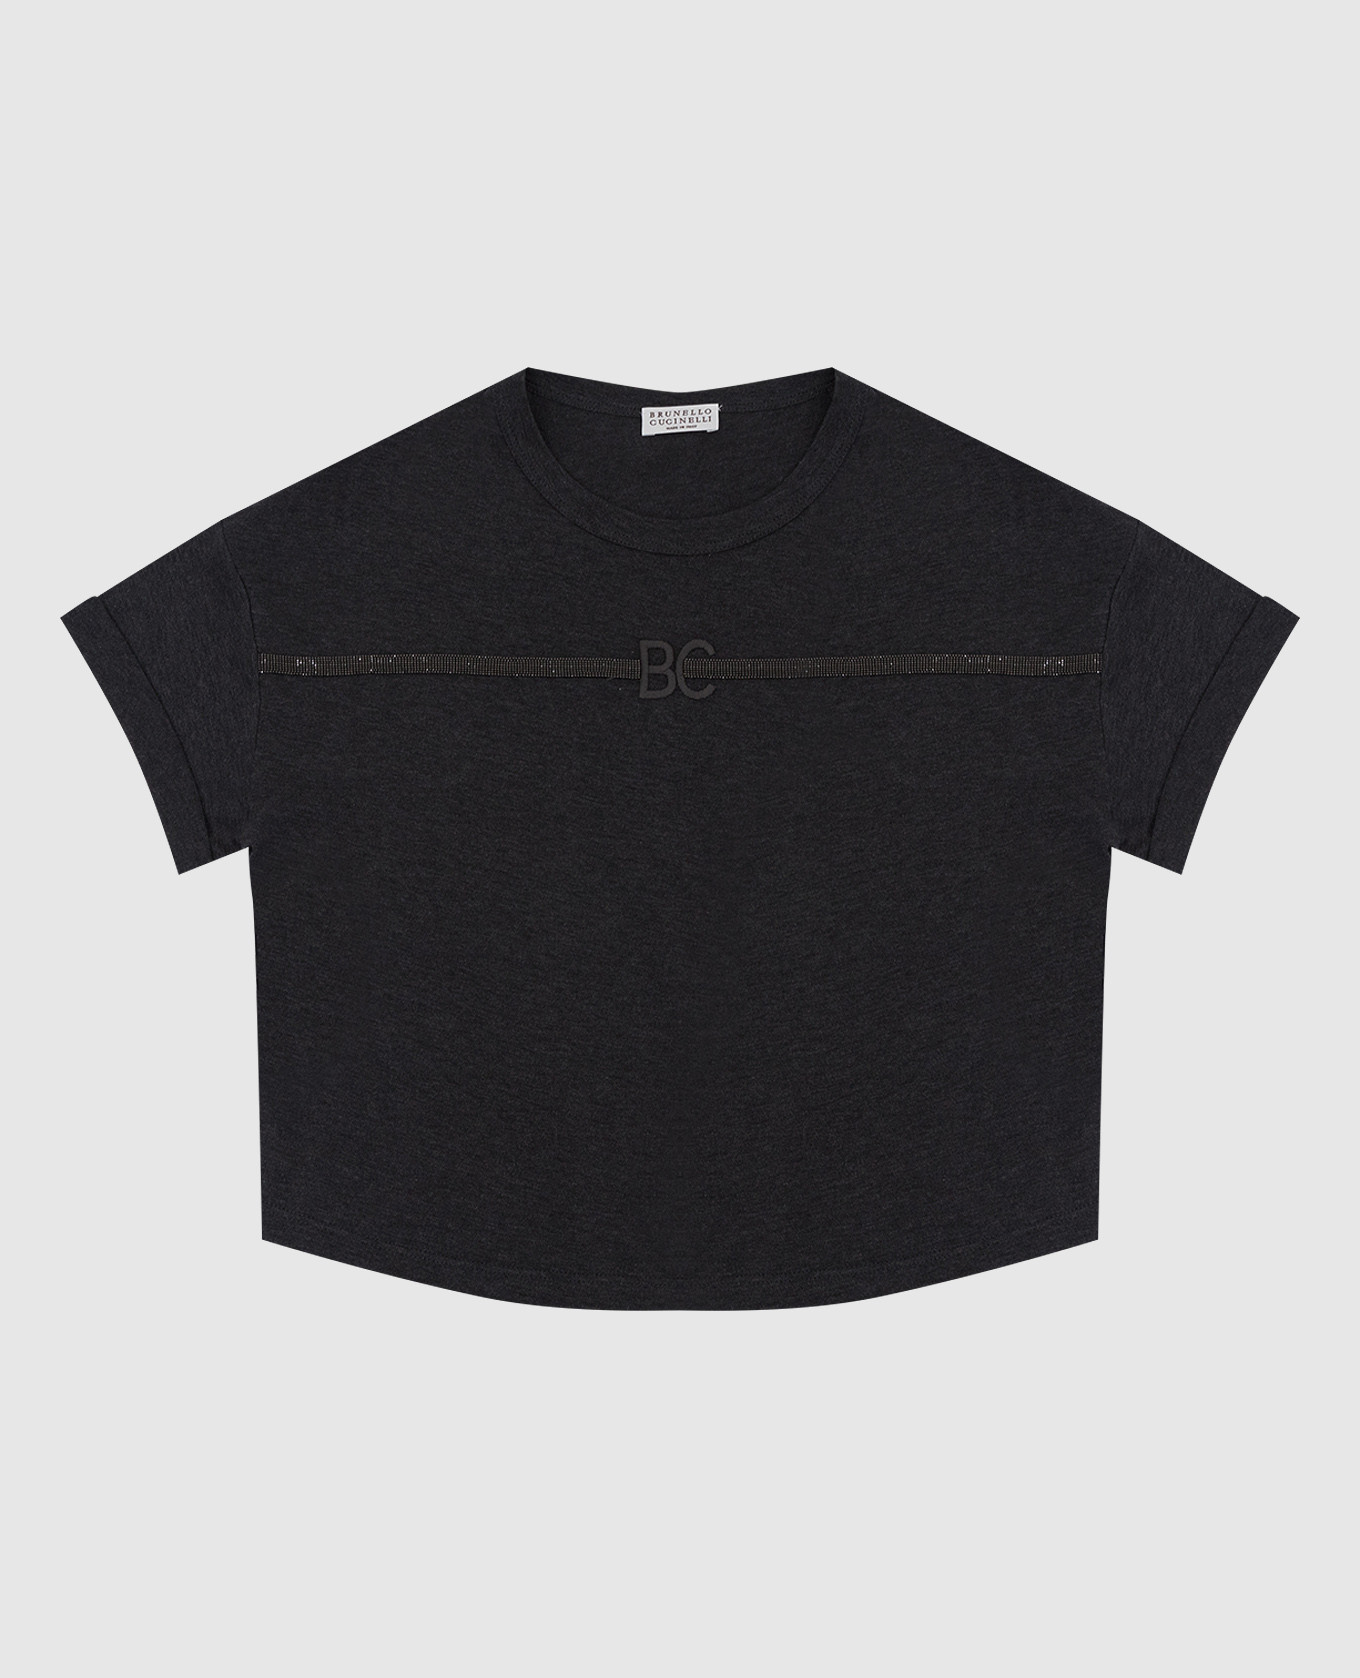 Детская темно-серая футболка с цепочками и монограммой